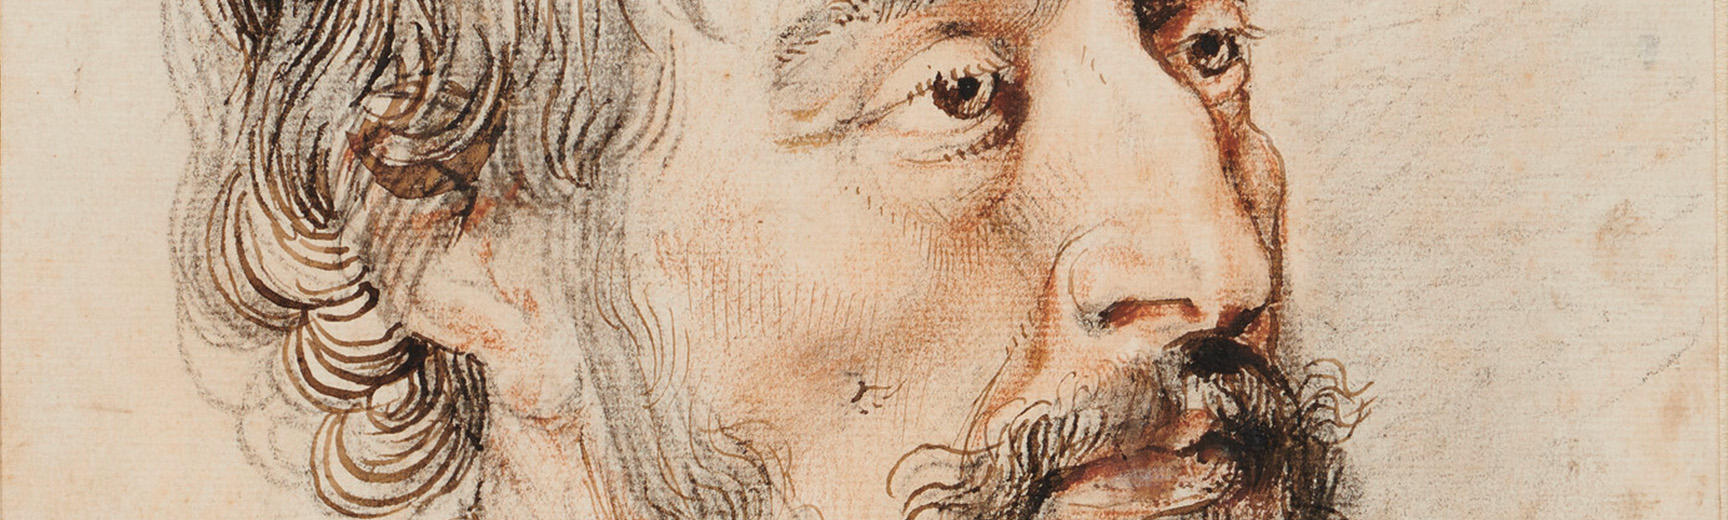 Detail of a portrait of Thomas Howard, Earl of Arundel, Peter Paul Rubens, 1629-30